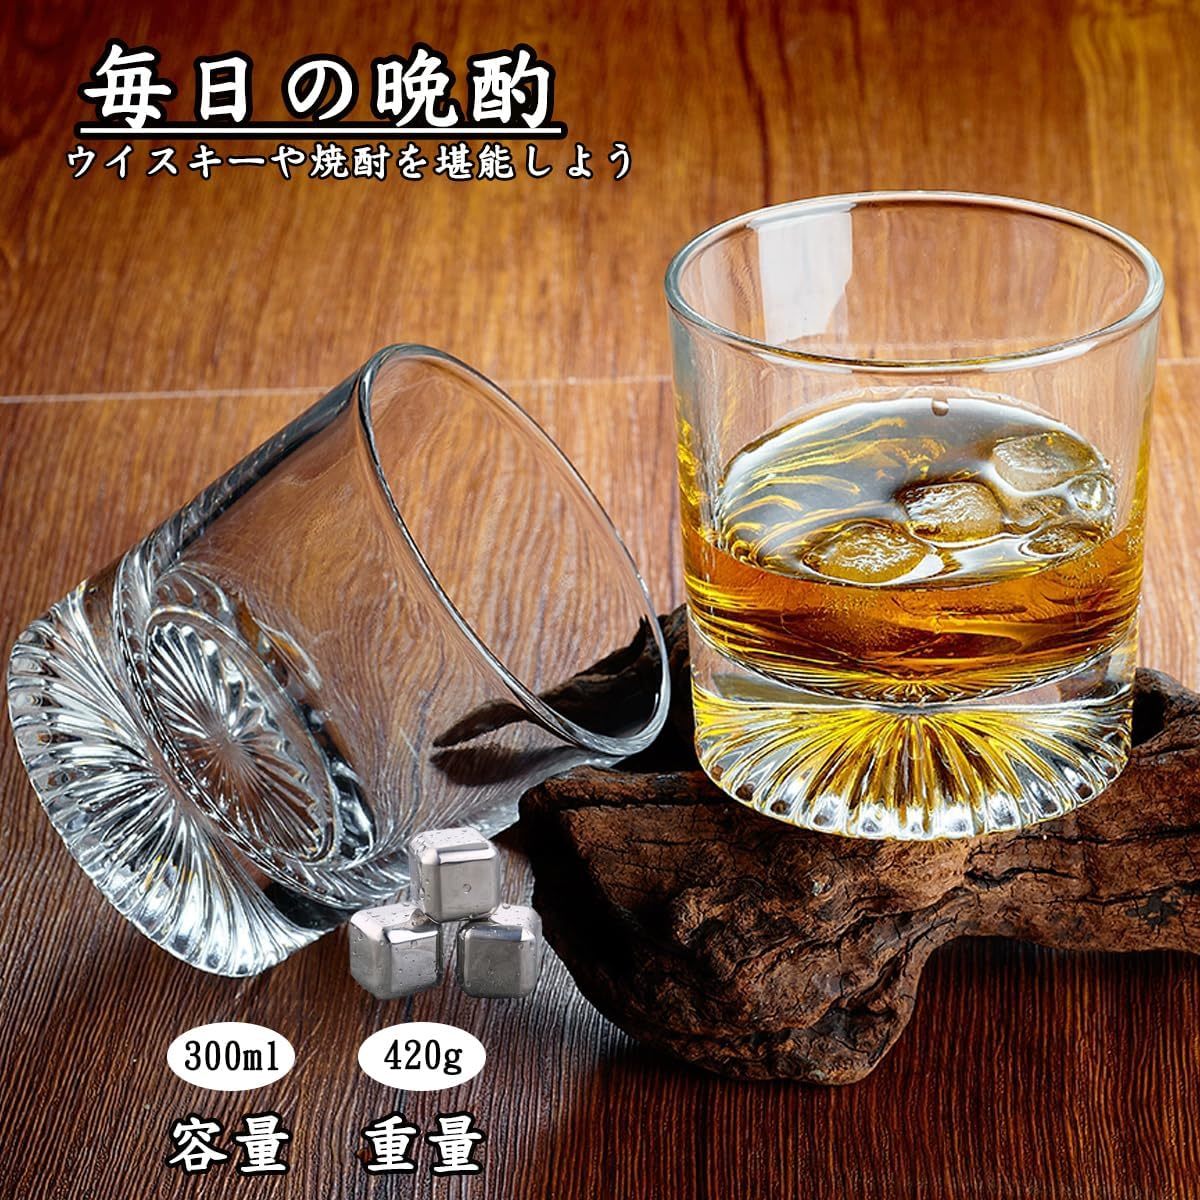 Yoseka ロックグラス 大きめ 300ml ウイスキー グラス 還暦祝い 男性 回転グラス ビール ギフト ダブルウォールグラス 誕生日 男性_画像7